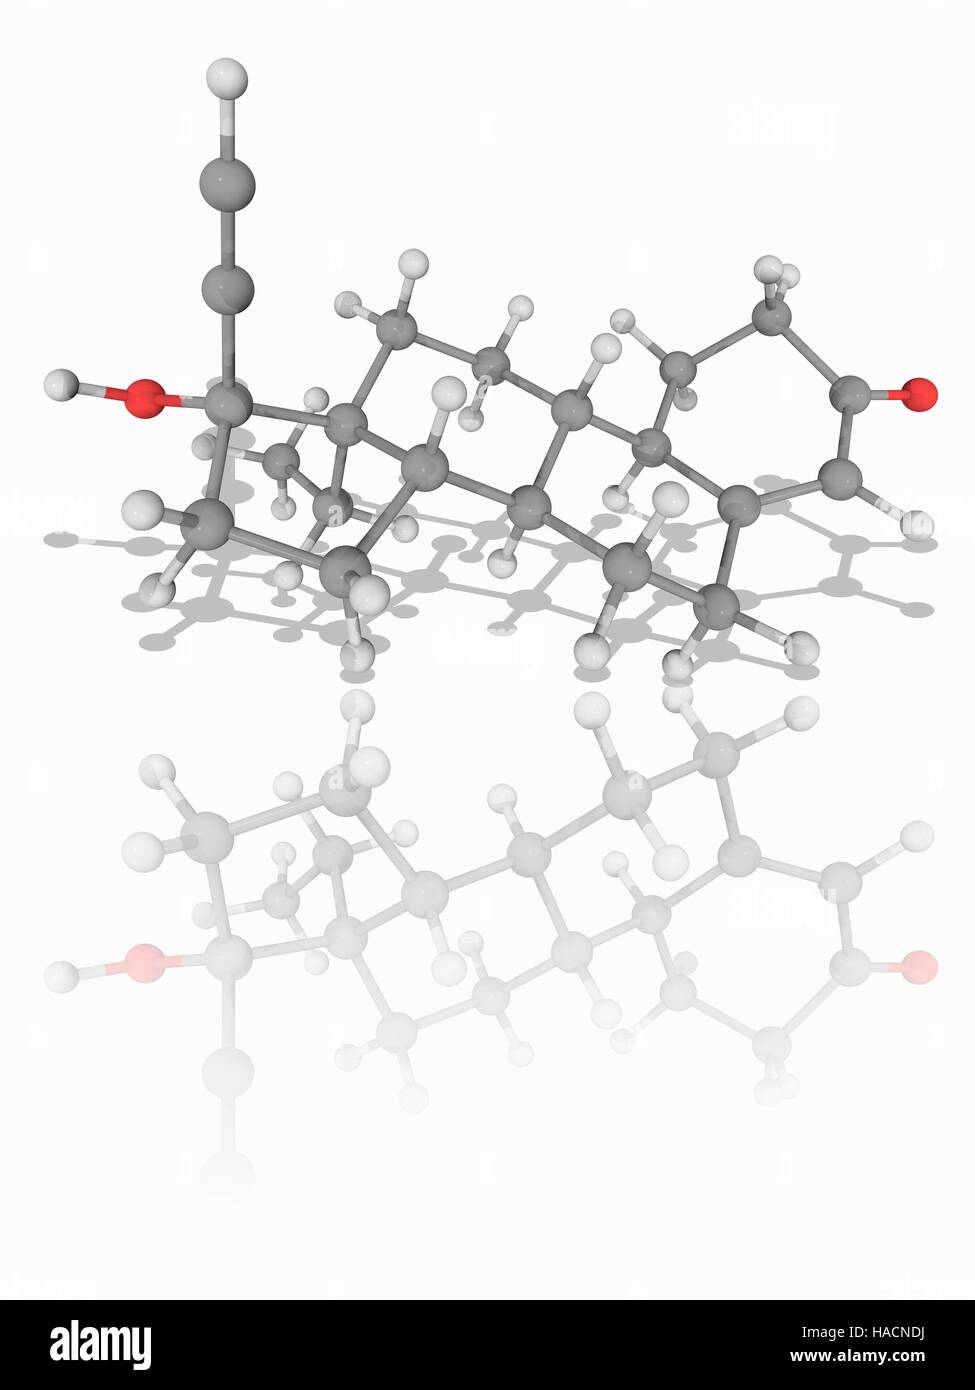 Le lévonorgestrel. Le modèle moléculaire de l'hormone de synthèse du lévonorgestrel (C21.H28.O2). Cette deuxième génération de la progestine synthétique est utilisée dans les contraceptifs hormonaux tels que la "pilule du lendemain". Les atomes sont représentés comme des sphères et sont codés par couleur : carbone (gris), l'hydrogène (blanc) et d'oxygène (rouge). L'illustration. Banque D'Images